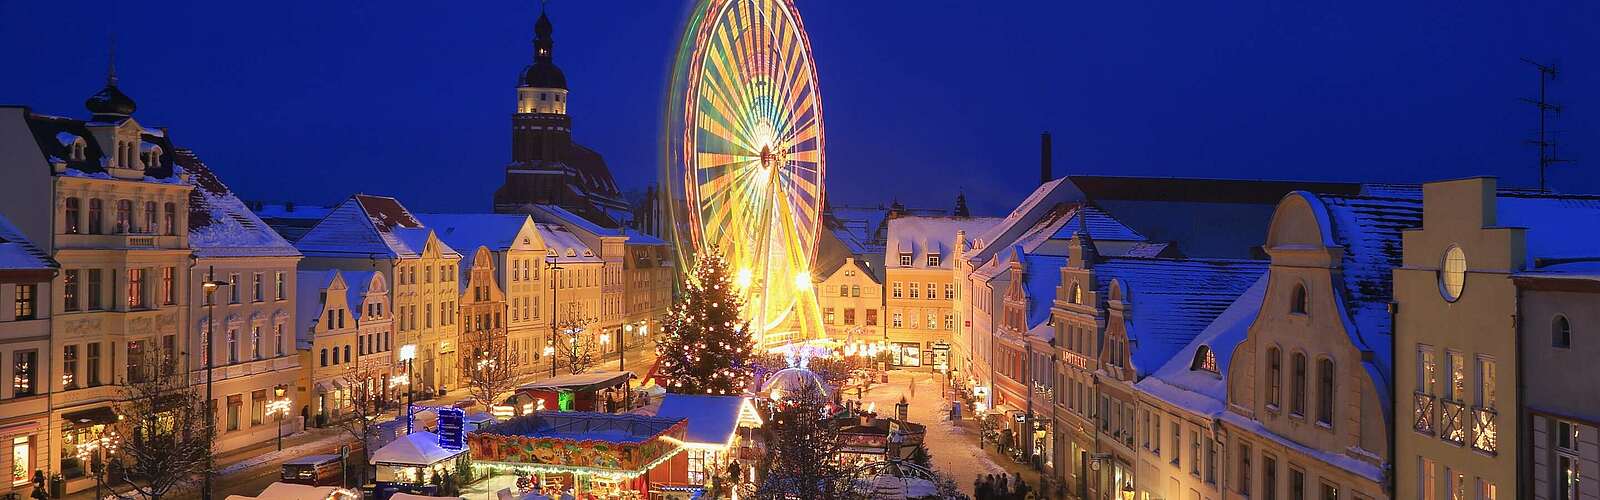 Weihnachtsmarkt in Cottbus,
        
    

        Picture: TMB-Fotoarchiv/Rainer Weisflog